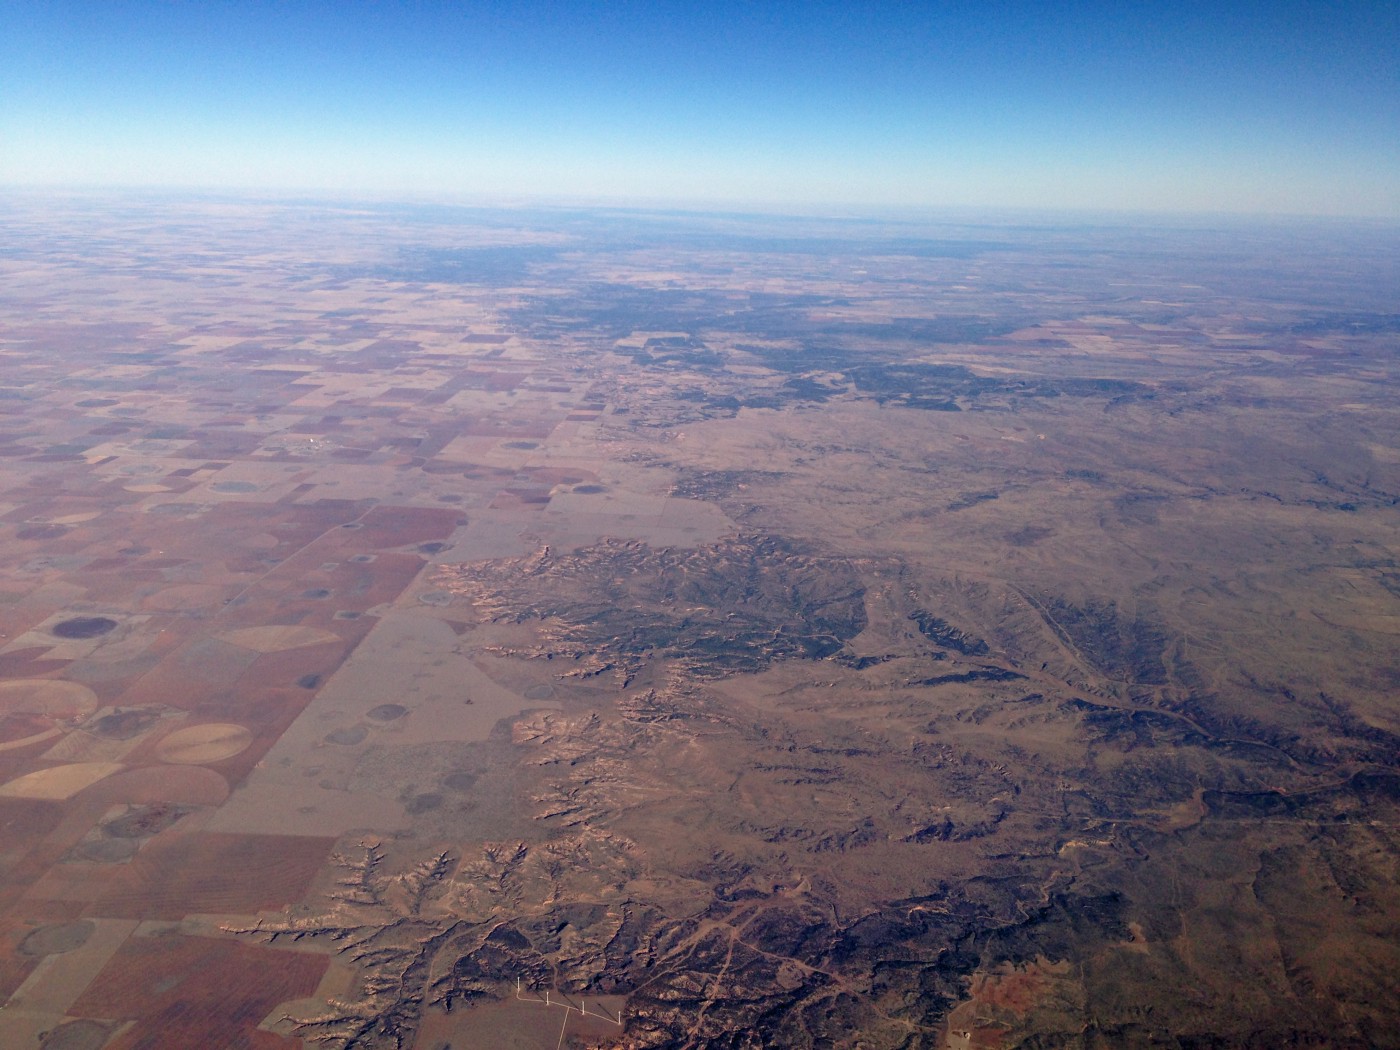 Above the Llano Estacado region of West Texas